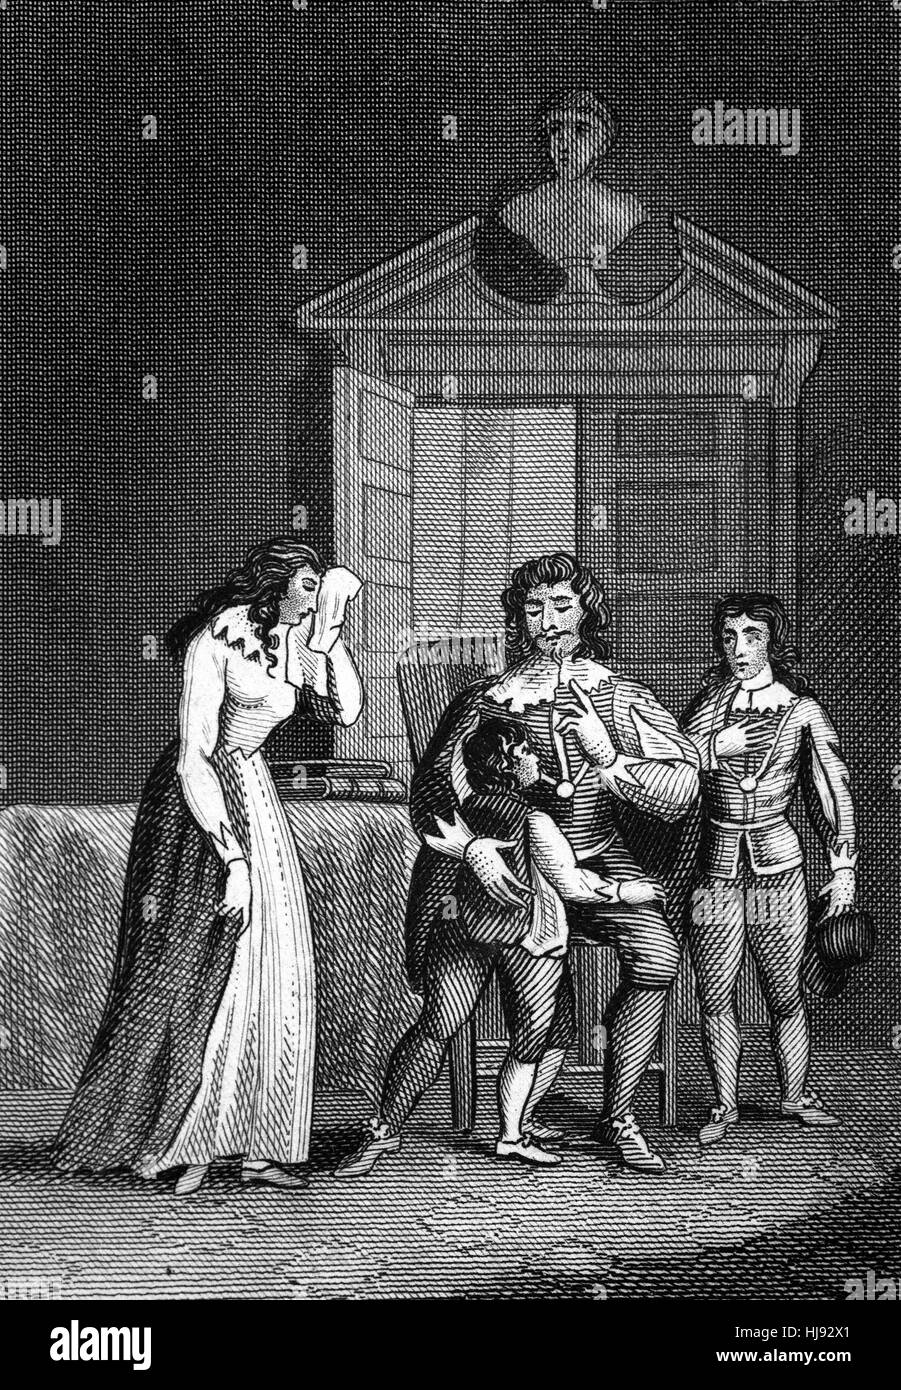 La décapitation du Roi Charles I (1600 - 1649) a été prévue pour le mardi 30 janvier 1649. Deux de ses enfants ont été autorisés à lui rendre visite le 29 janvier et il leur avait dit au revoir les larmes aux yeux. Après sa mort, ils sont restés en Angleterre sous le contrôle des parlementaires. Banque D'Images